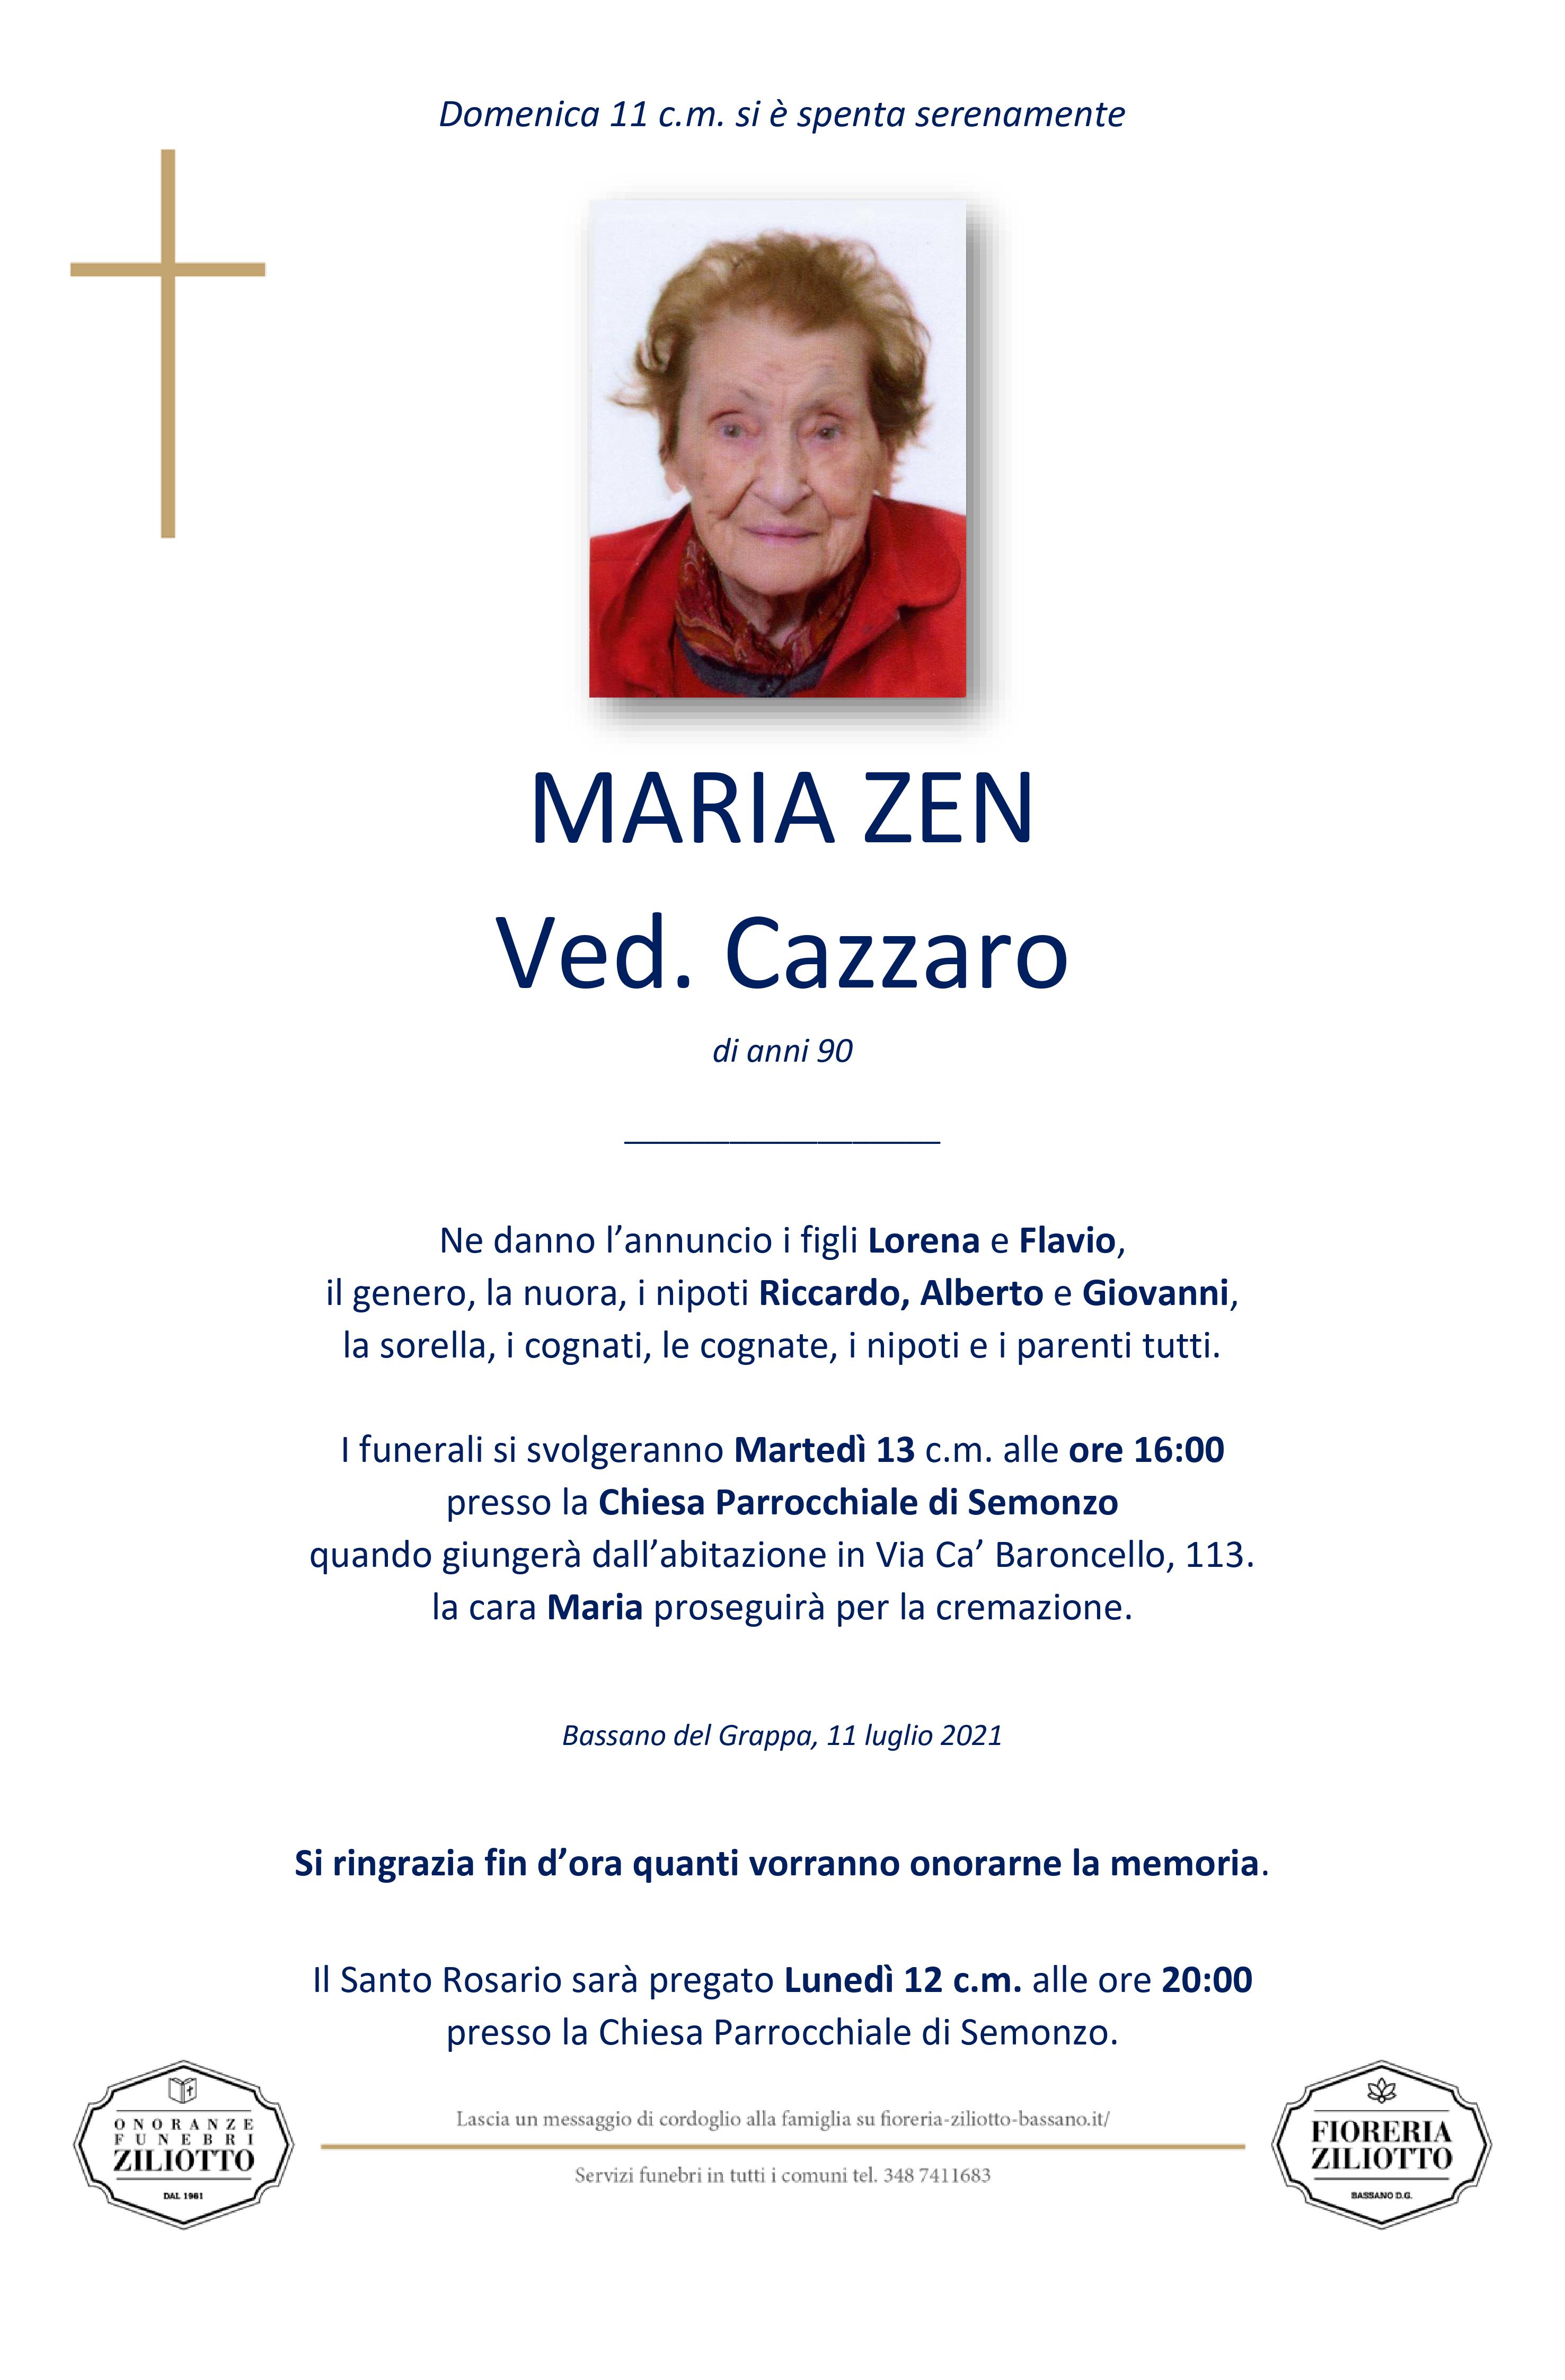 Maria Zen - 90 anni - Bassano del Grappa